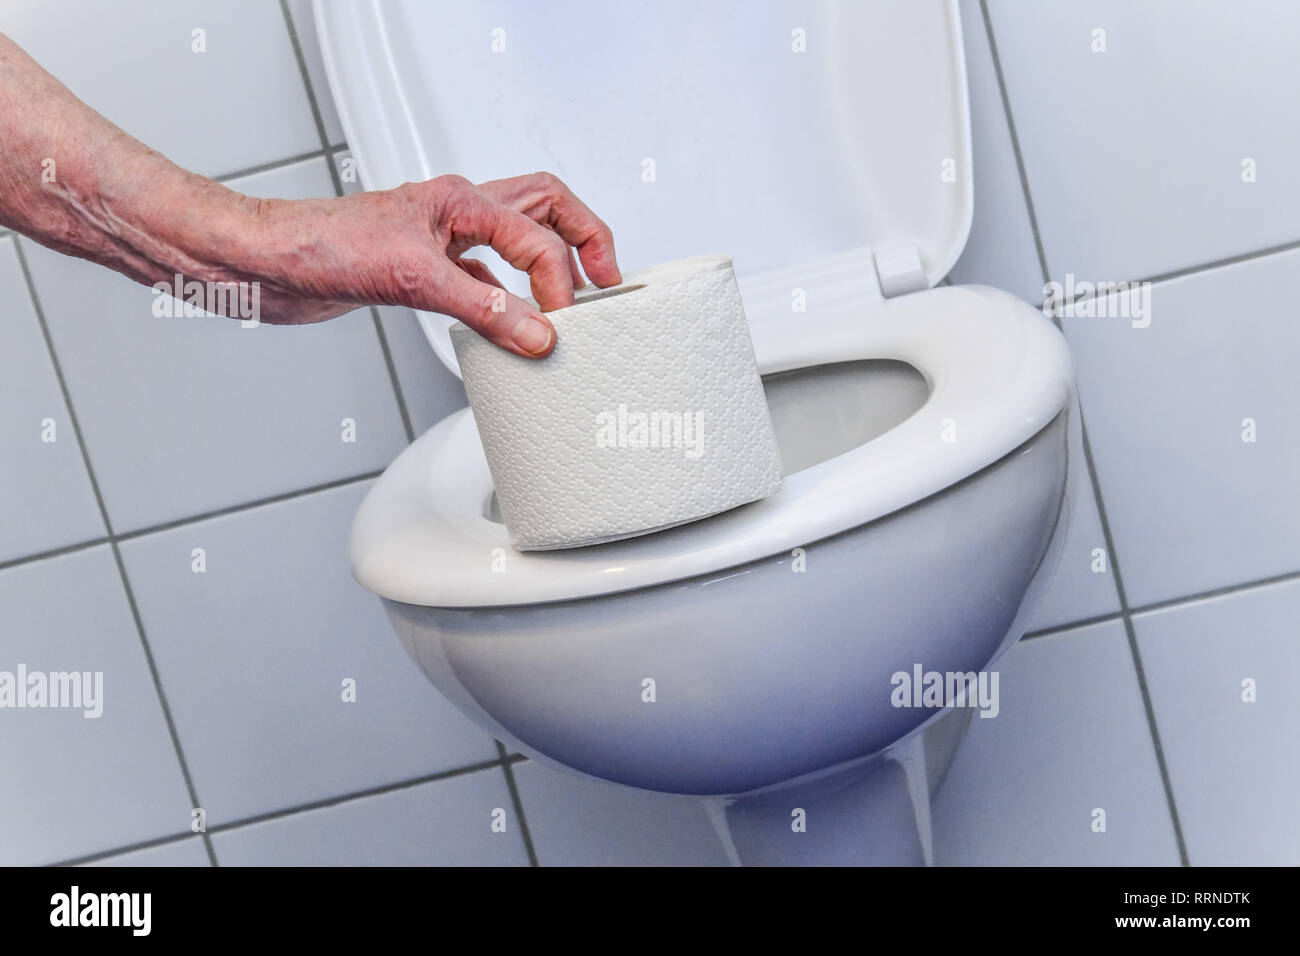 Loo paper, toilet, Klopapier, Toilette Stock Photo